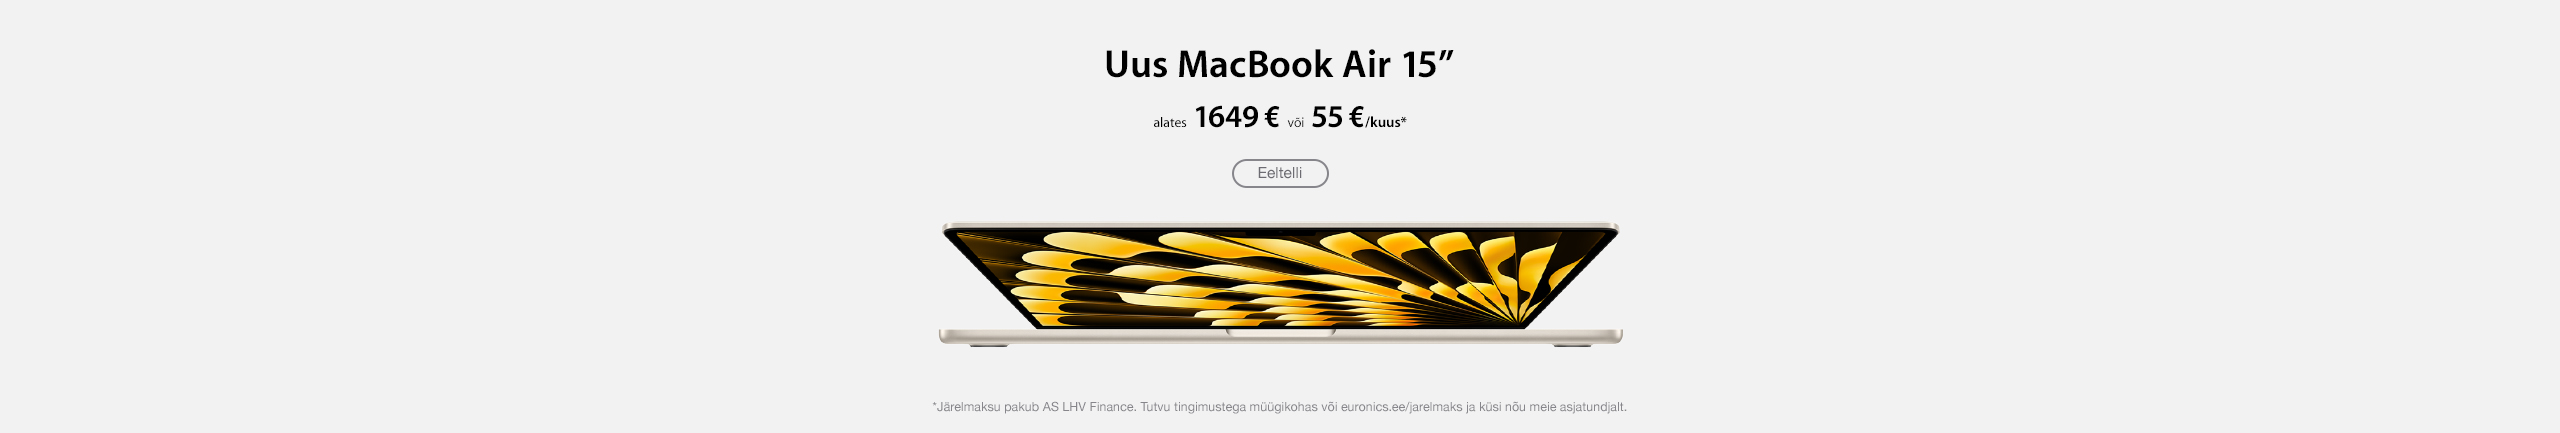 Apple Macbook Air 15"
